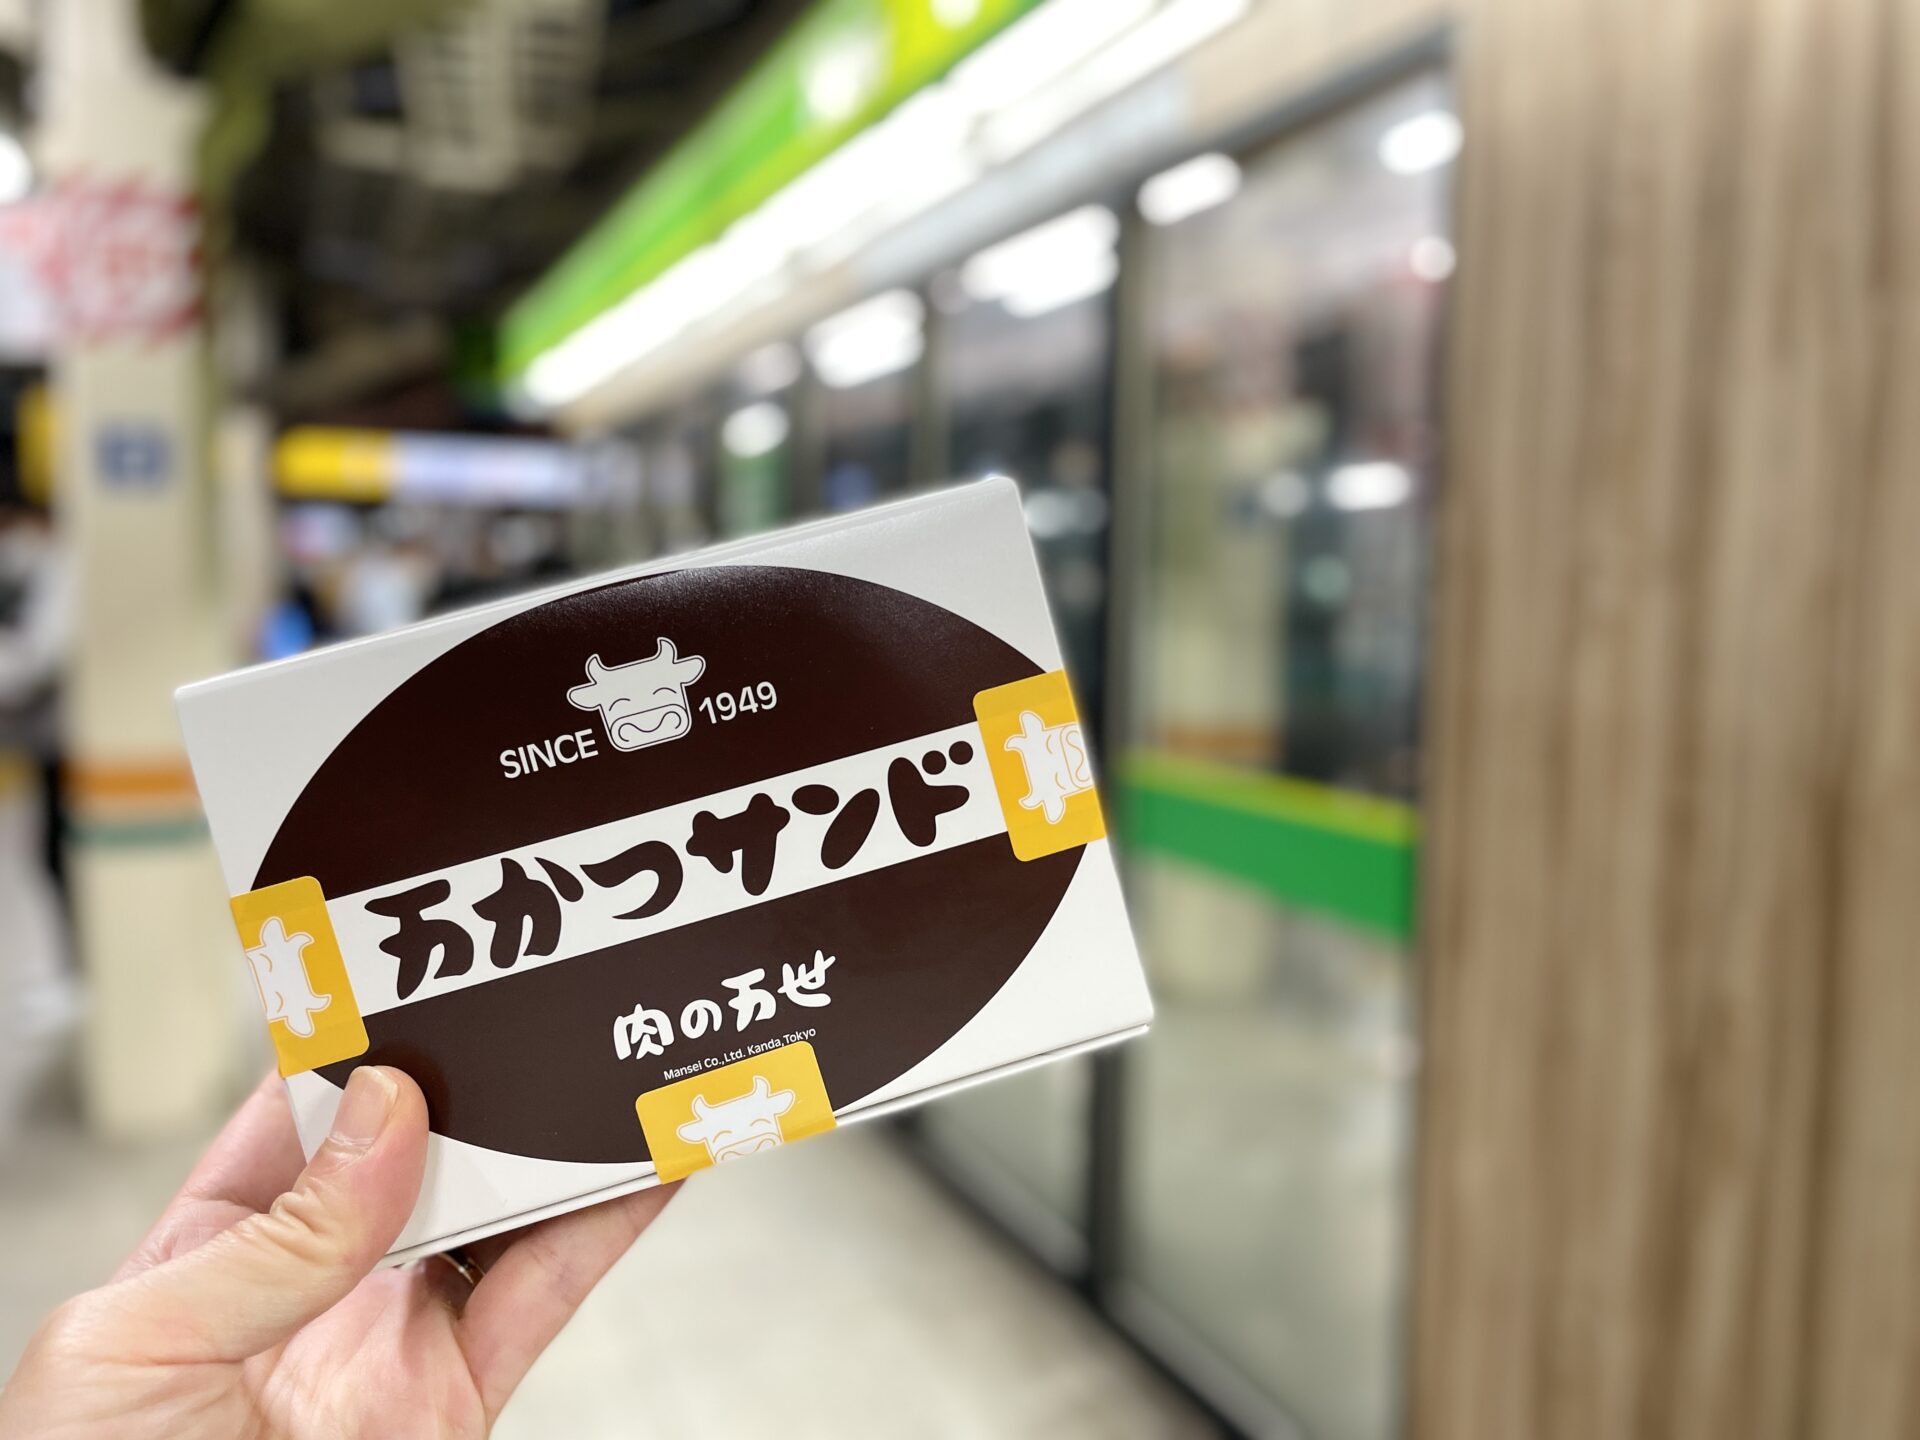 「東京エクストリームウォーク100」前日の様子 東京駅で駅弁探し